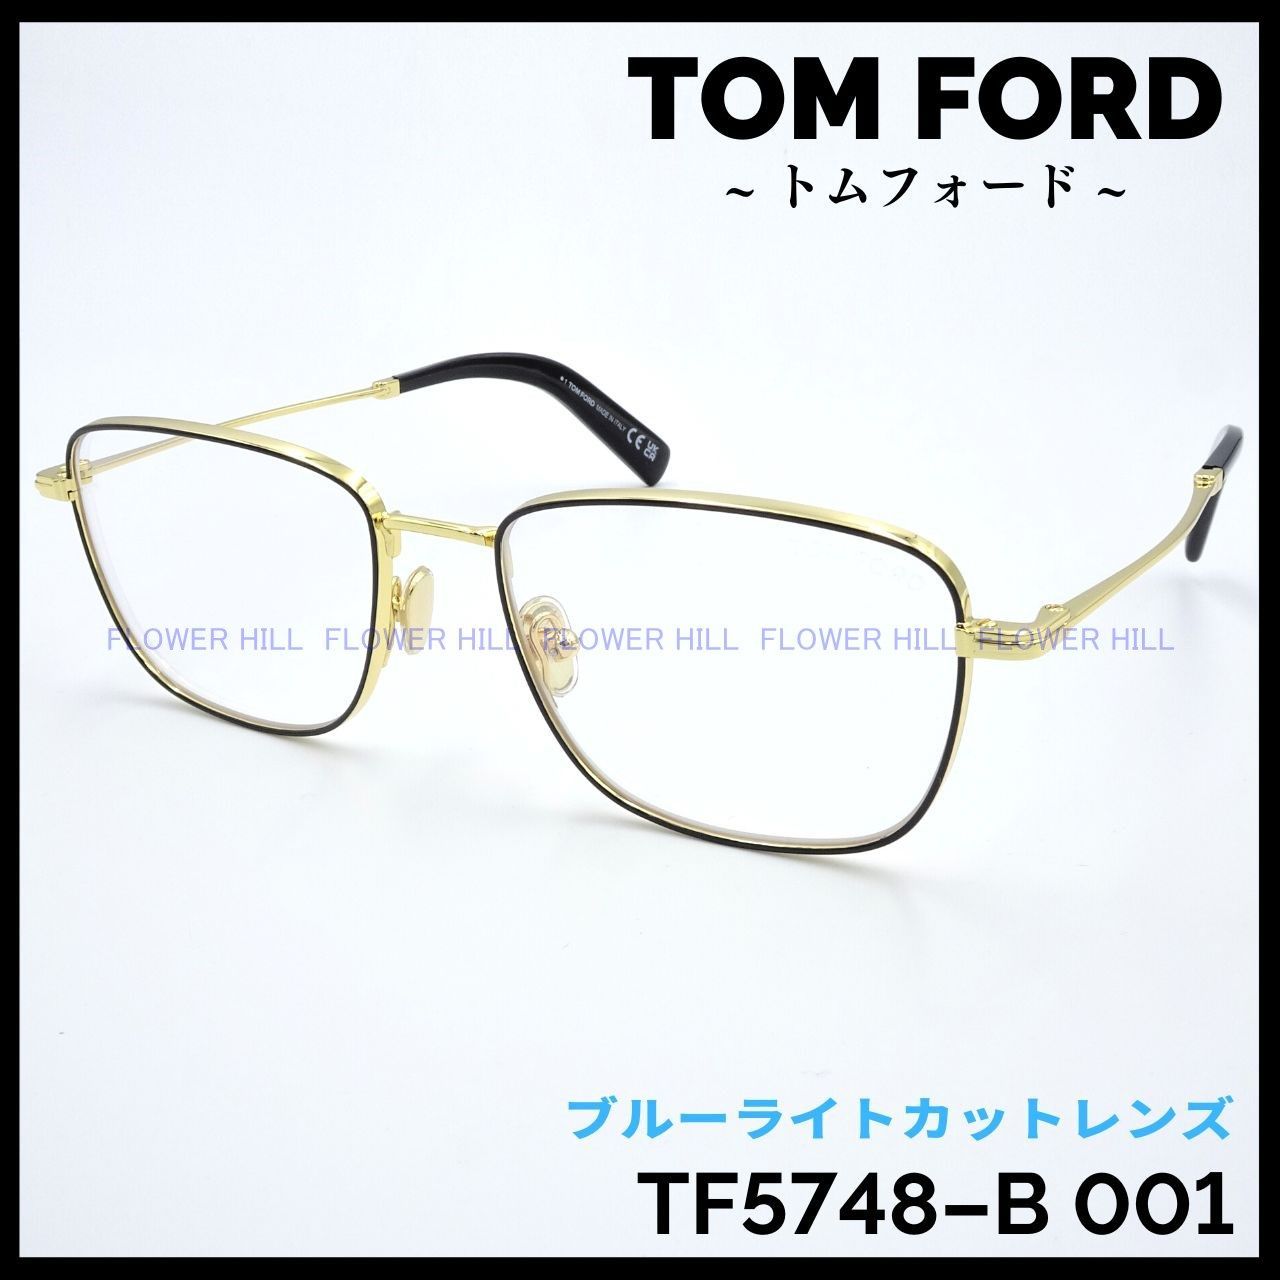 TOM FORD TF5748-B 028 メガネ ブルーライトカット ゴールドNEKOYAshop